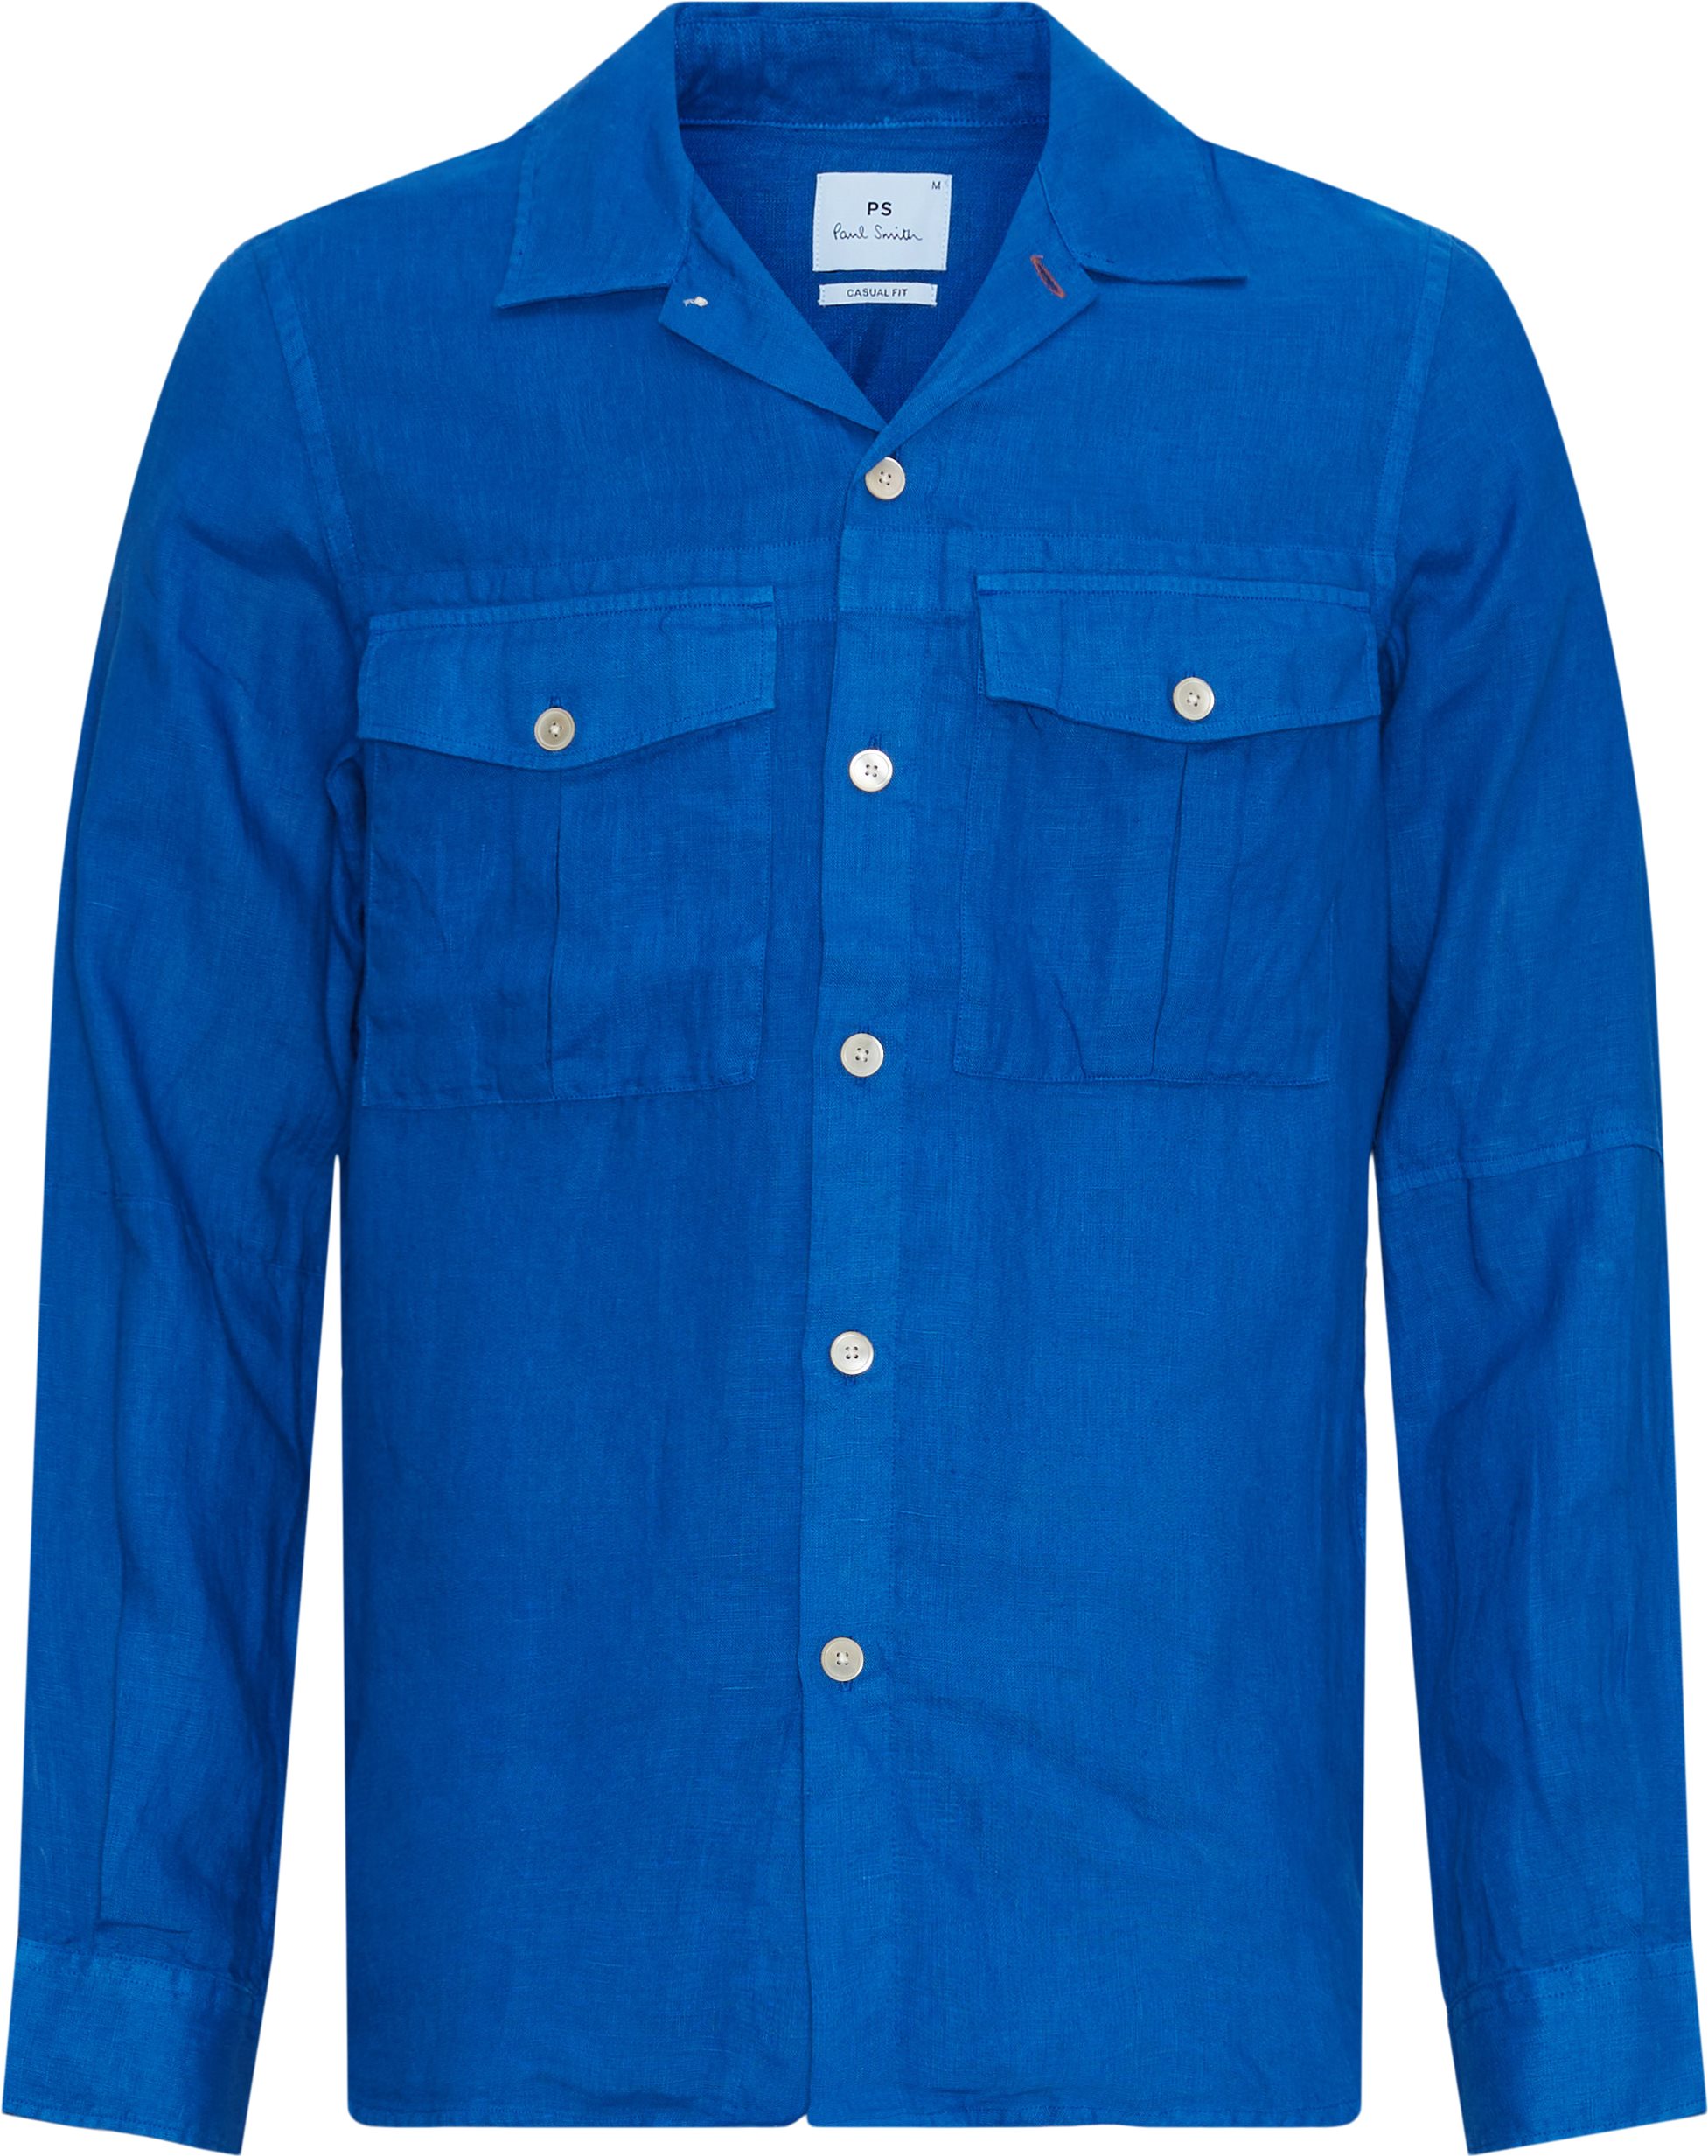 PS Paul Smith Shirts M2R-797Y-M20289 Blue